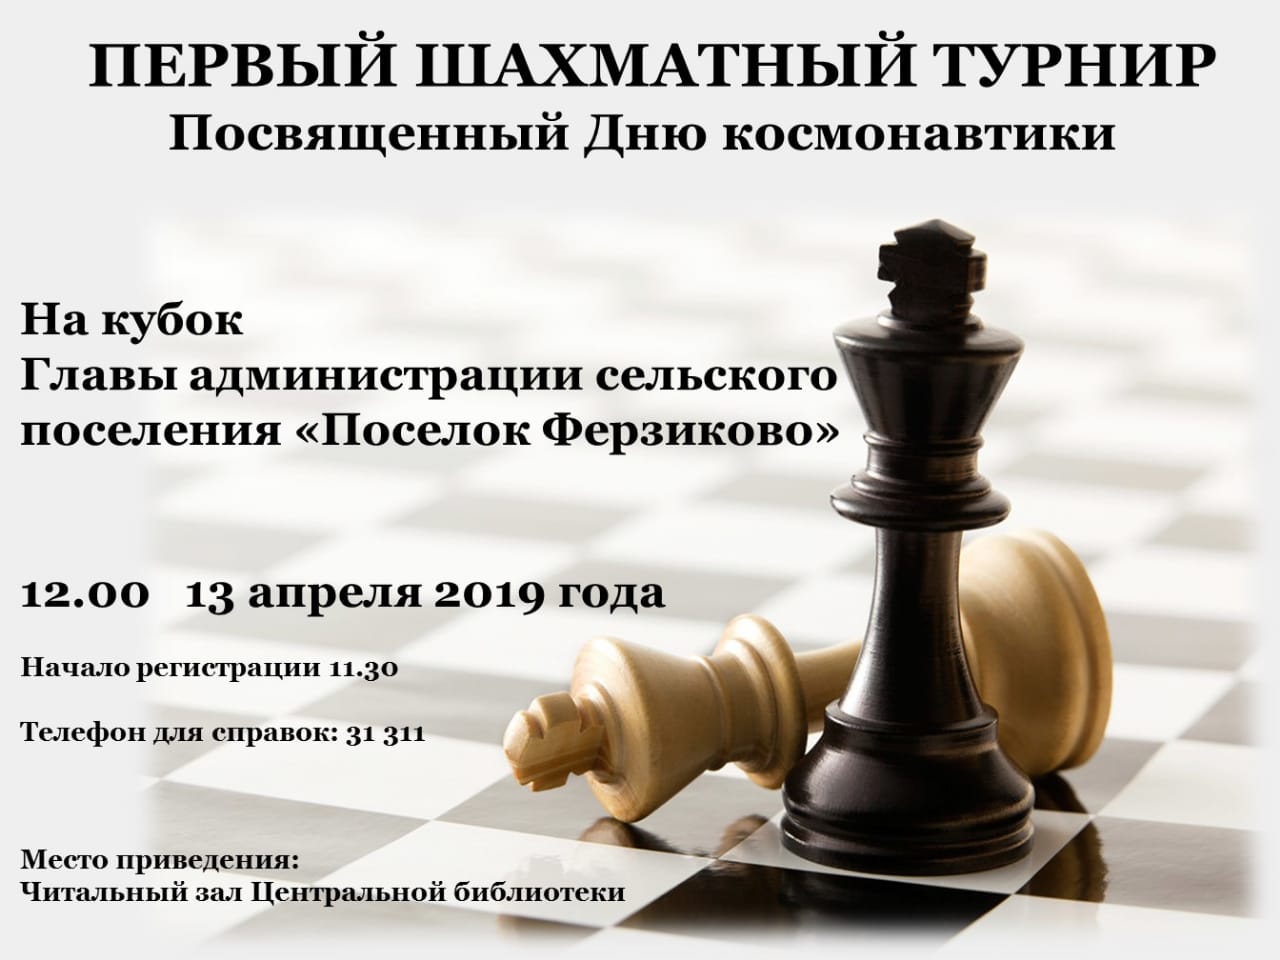 13 апреля 2019 года Первый шахматный турнир.